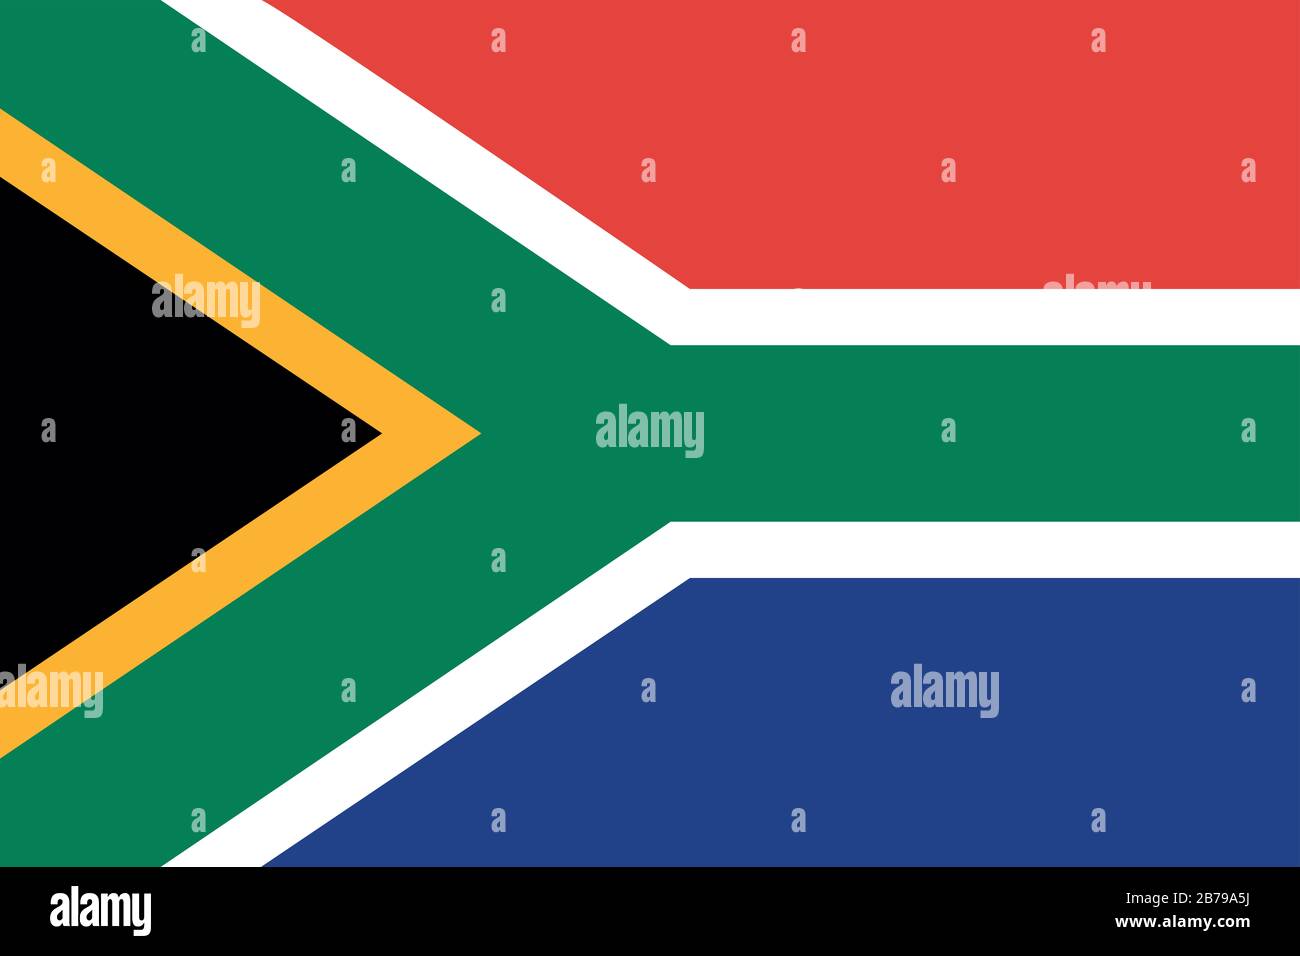 Bandera de Sudáfrica - relación estándar de bandera de Sudáfrica - modo de color RGB verdadero Foto de stock